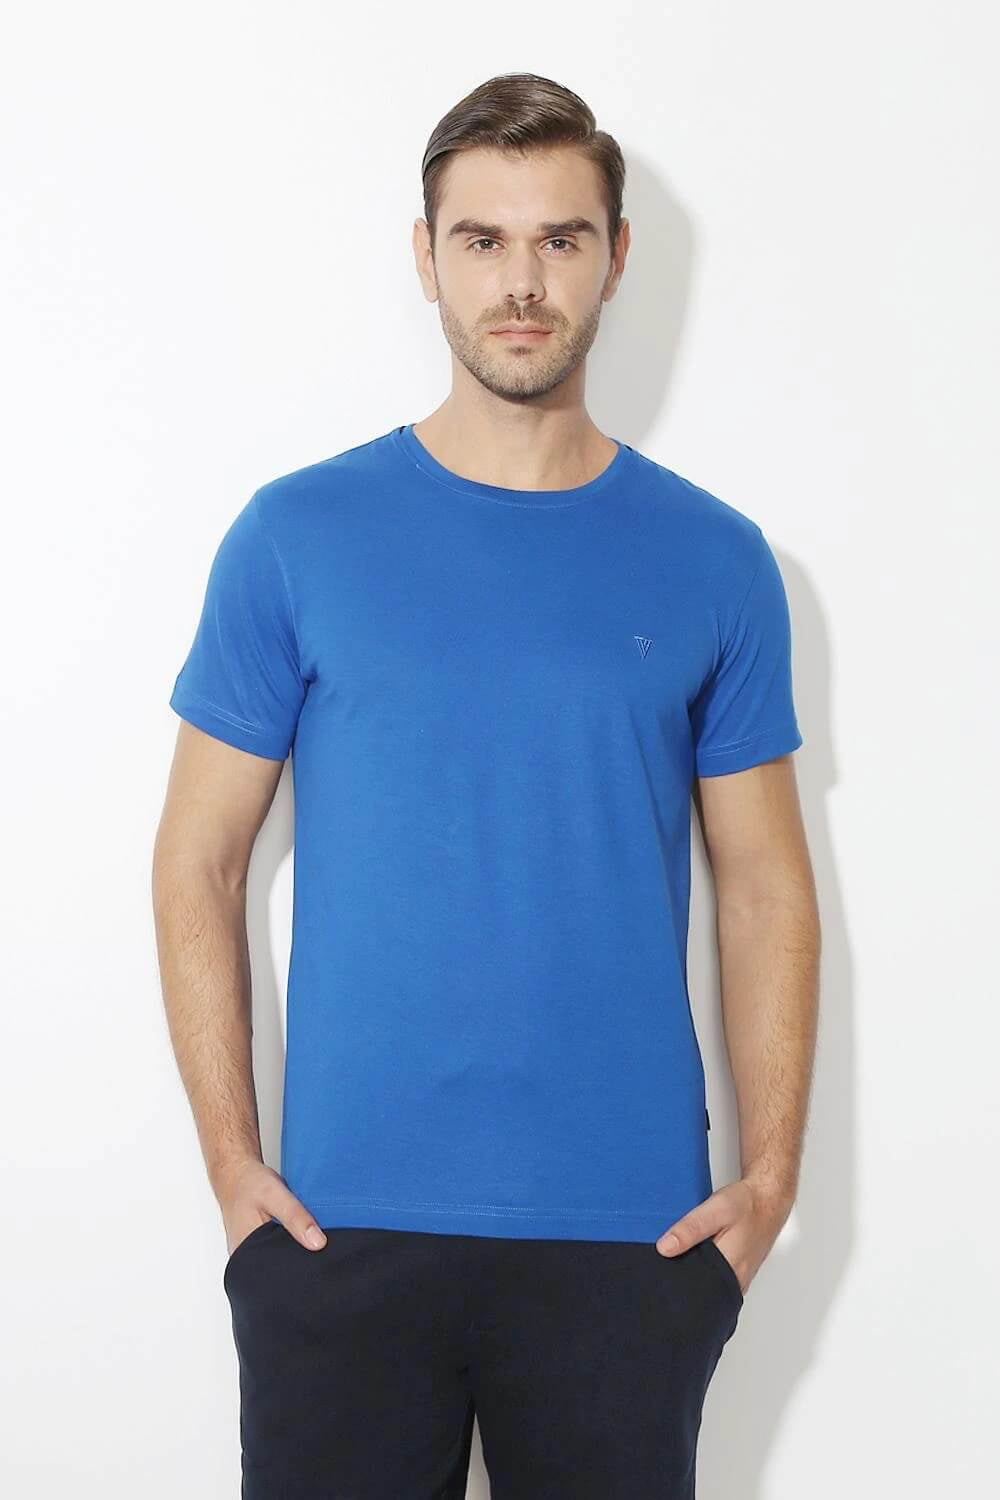 Van Heusen Lapis Blue Tshirt for Men #60021